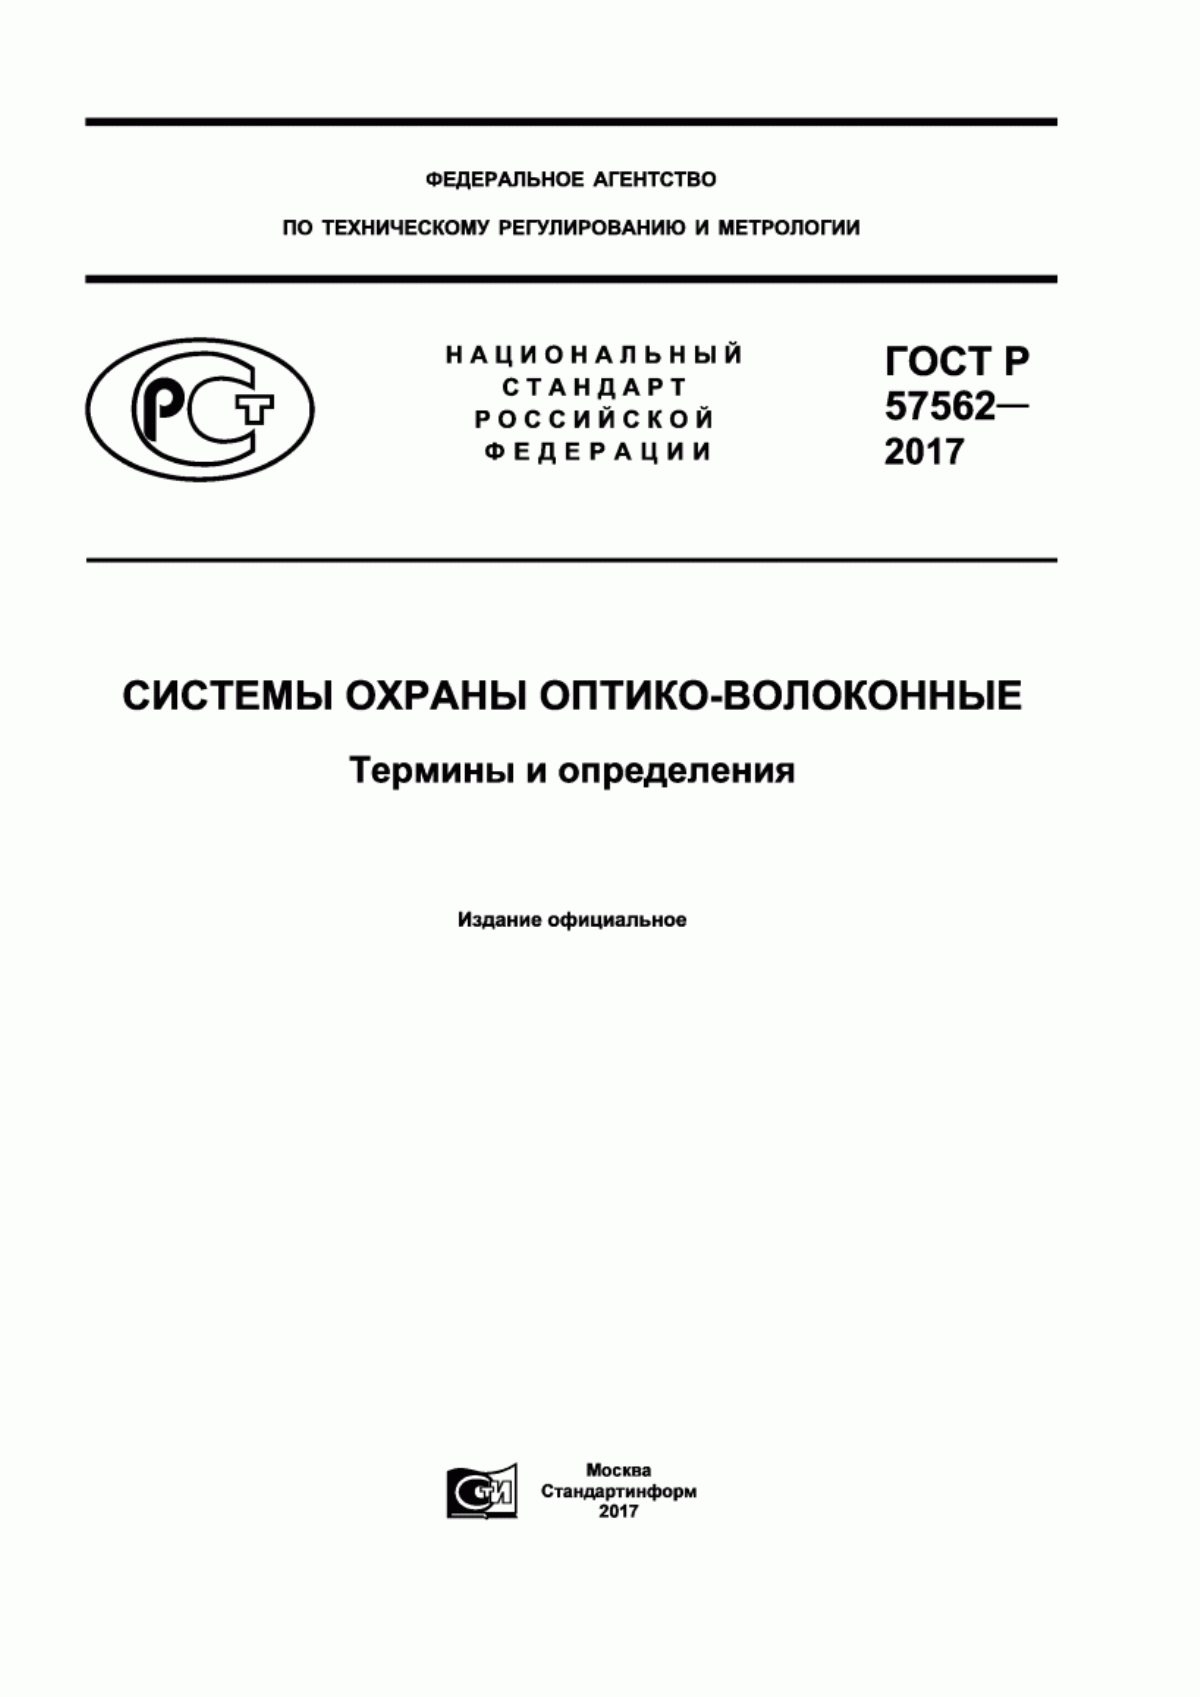 ГОСТ Р 57562-2017 Системы охраны оптико-волоконные. Термины и определения